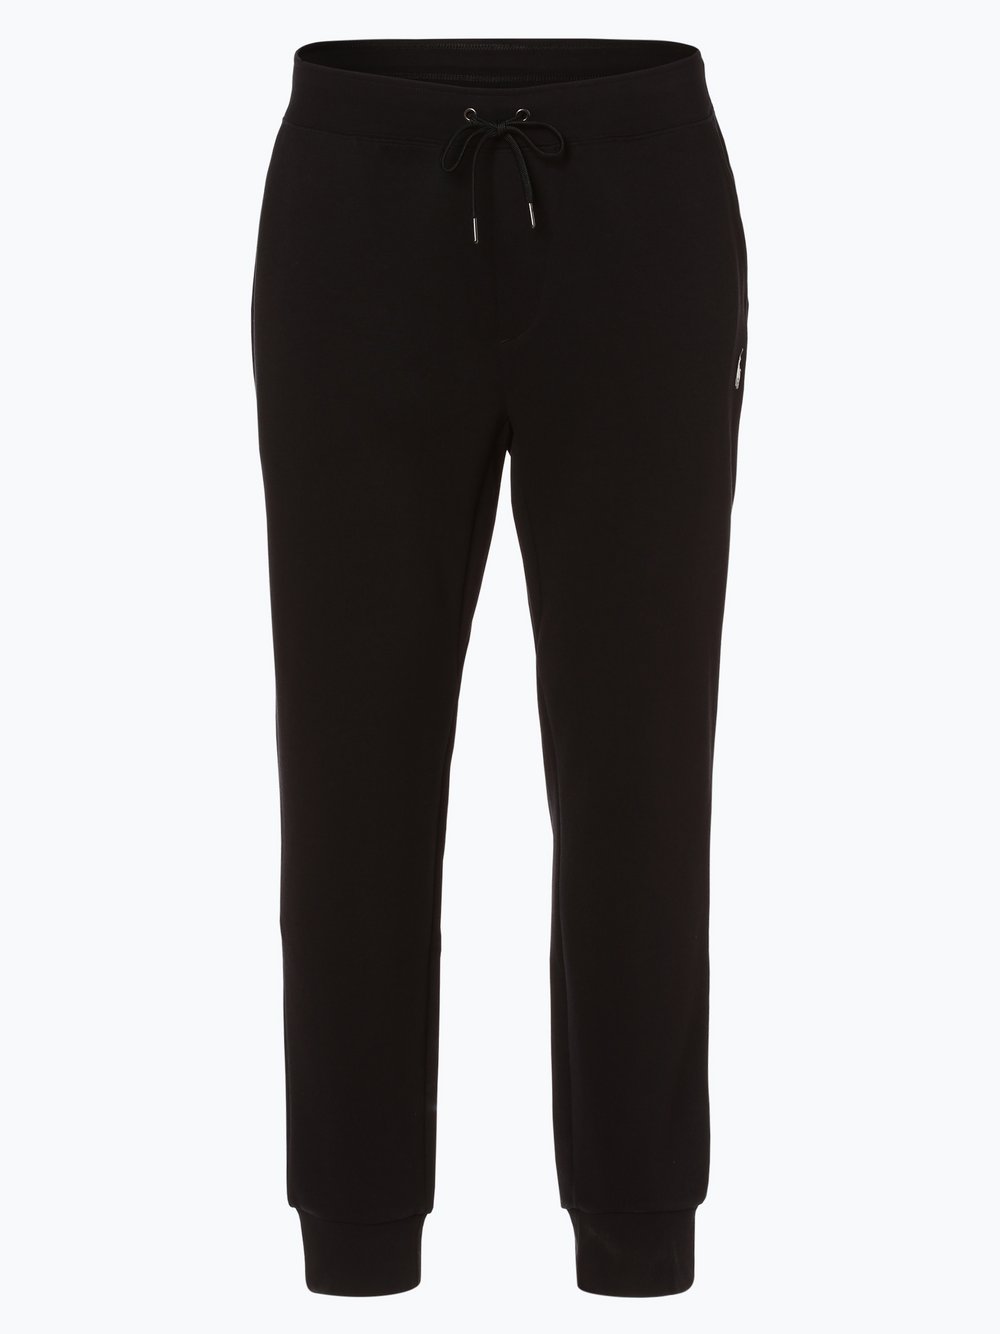 Polo Ralph Lauren - Spodnie dresowe męskie, czarny